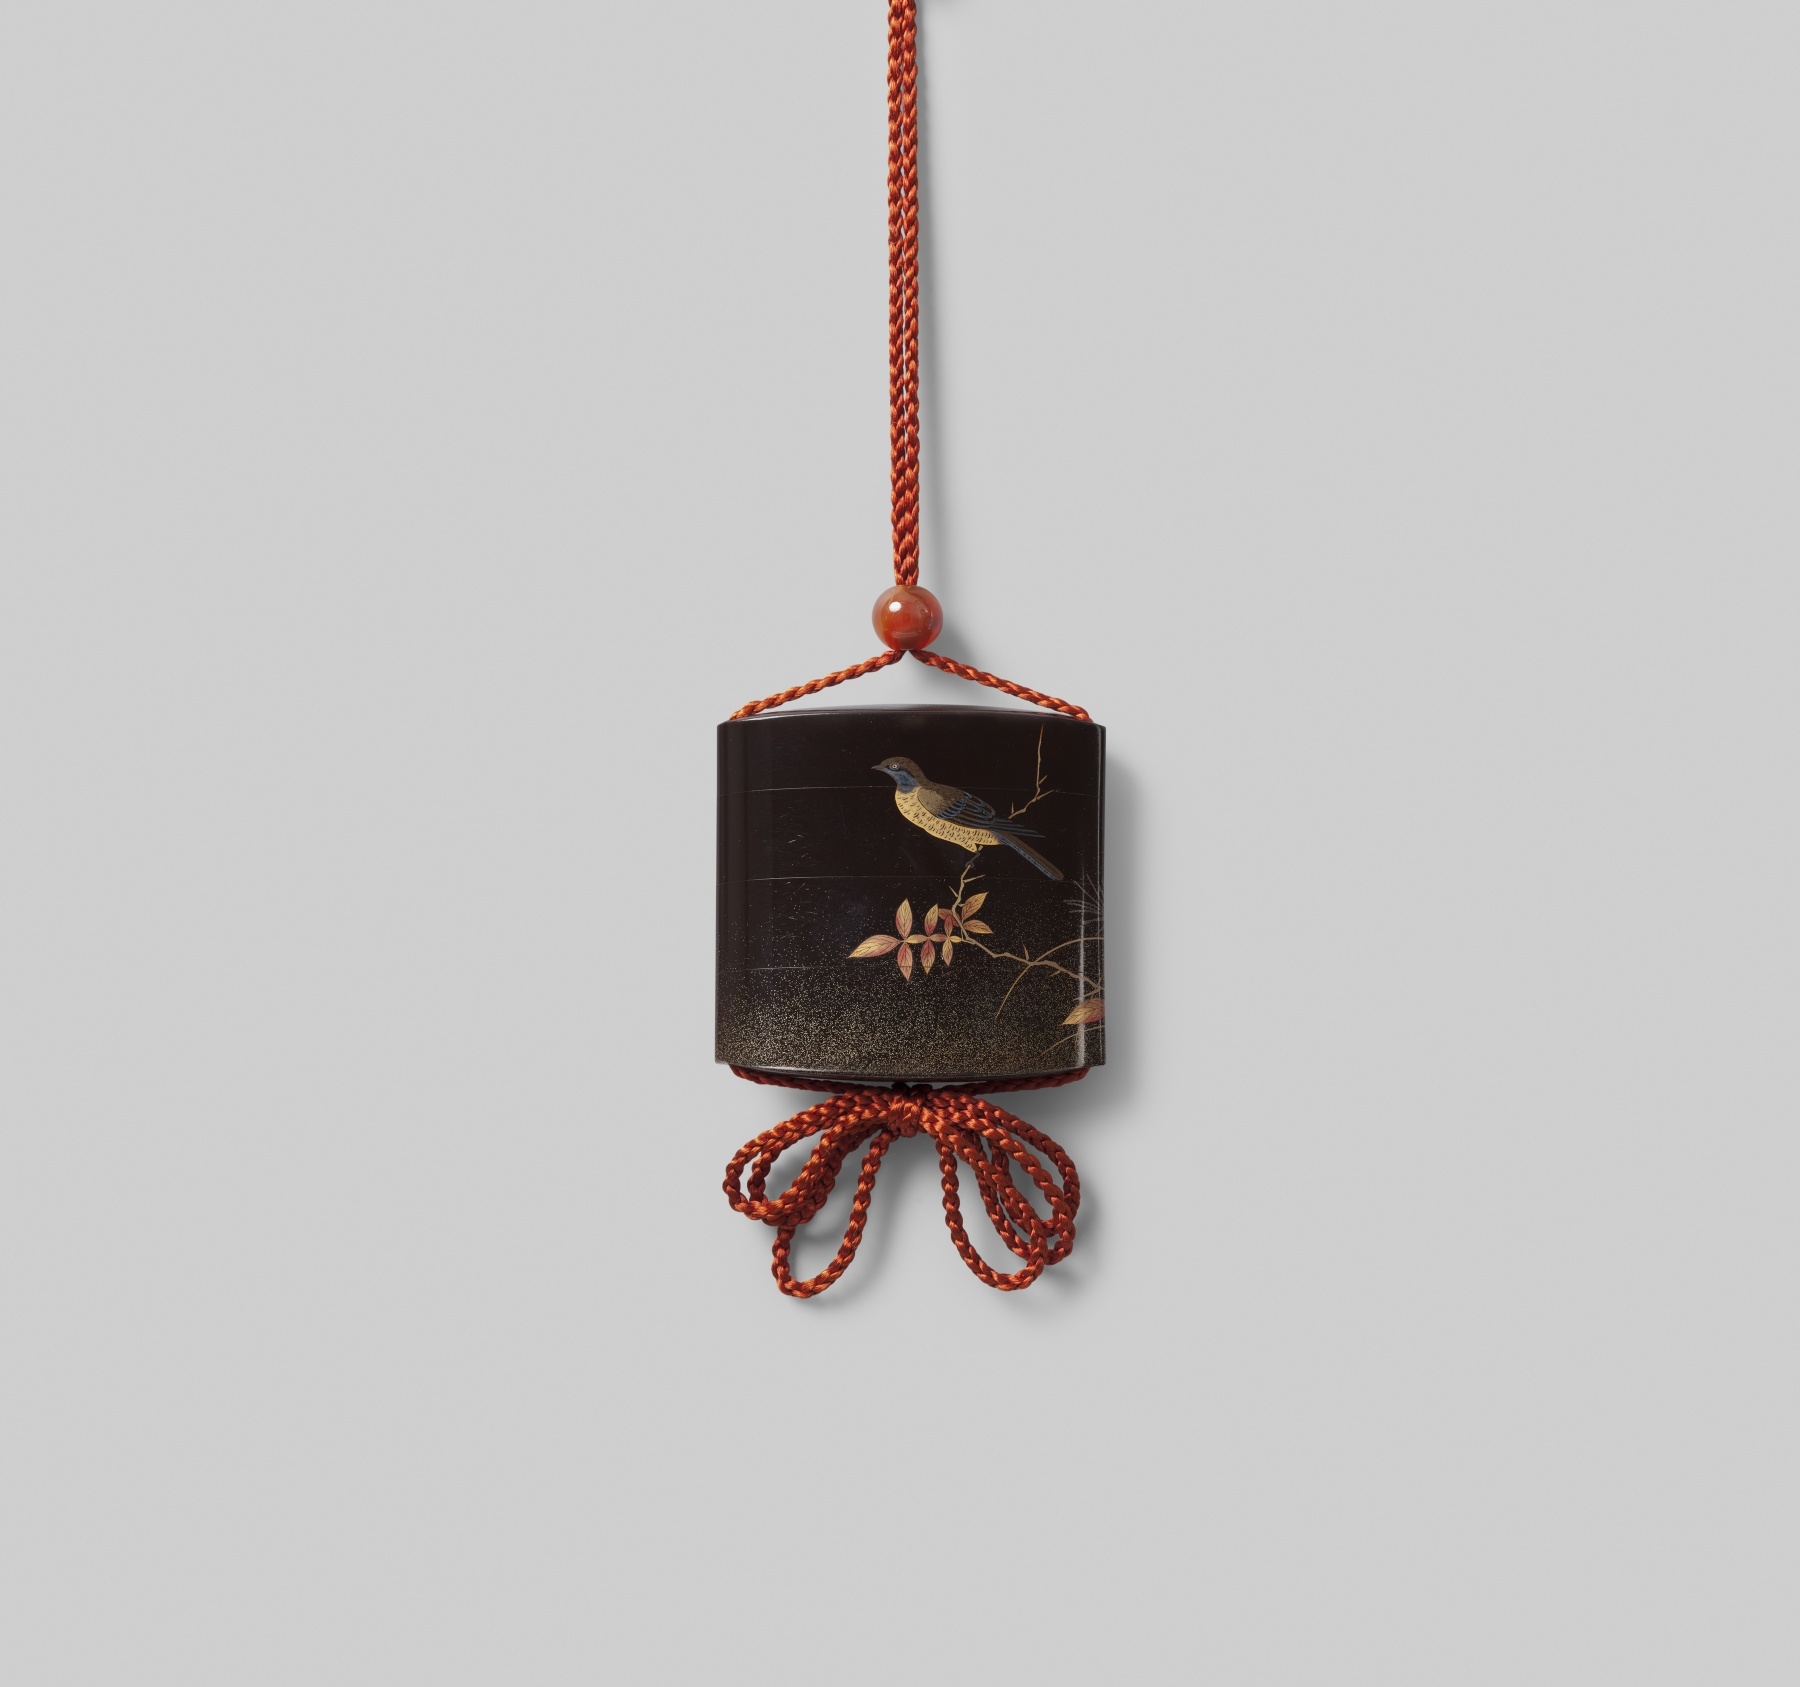 Inrō mit Motiv eines rastenden Vogels (Museum für Lackkunst CC BY-NC-SA)